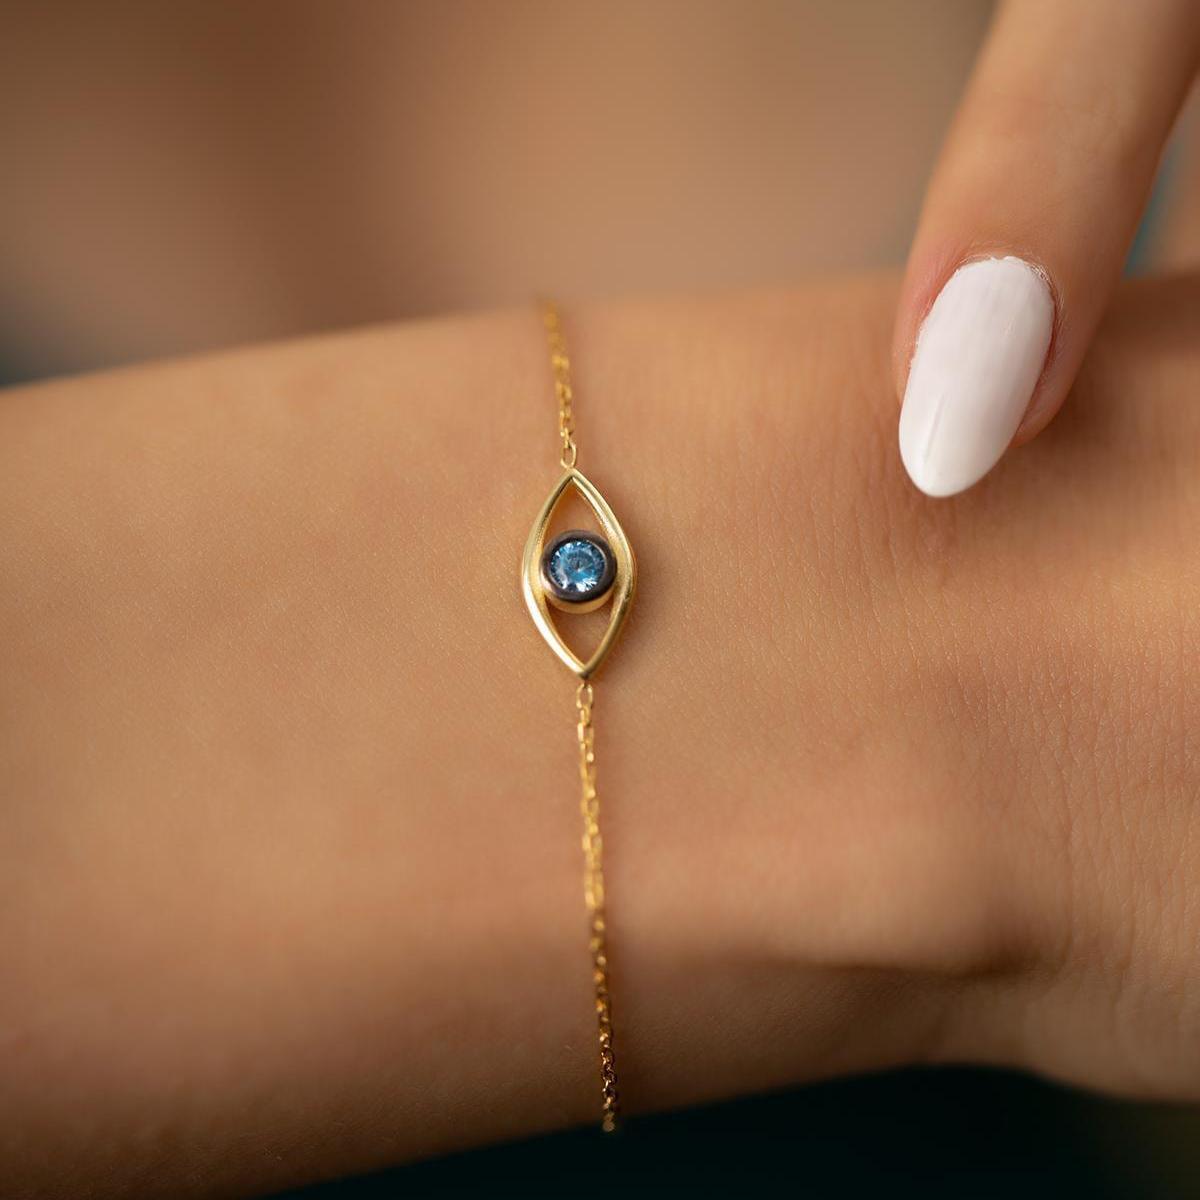 Italian Design Eye of Horus Silver Bracelet • Protection Bracelet - Trending Silver Gifts